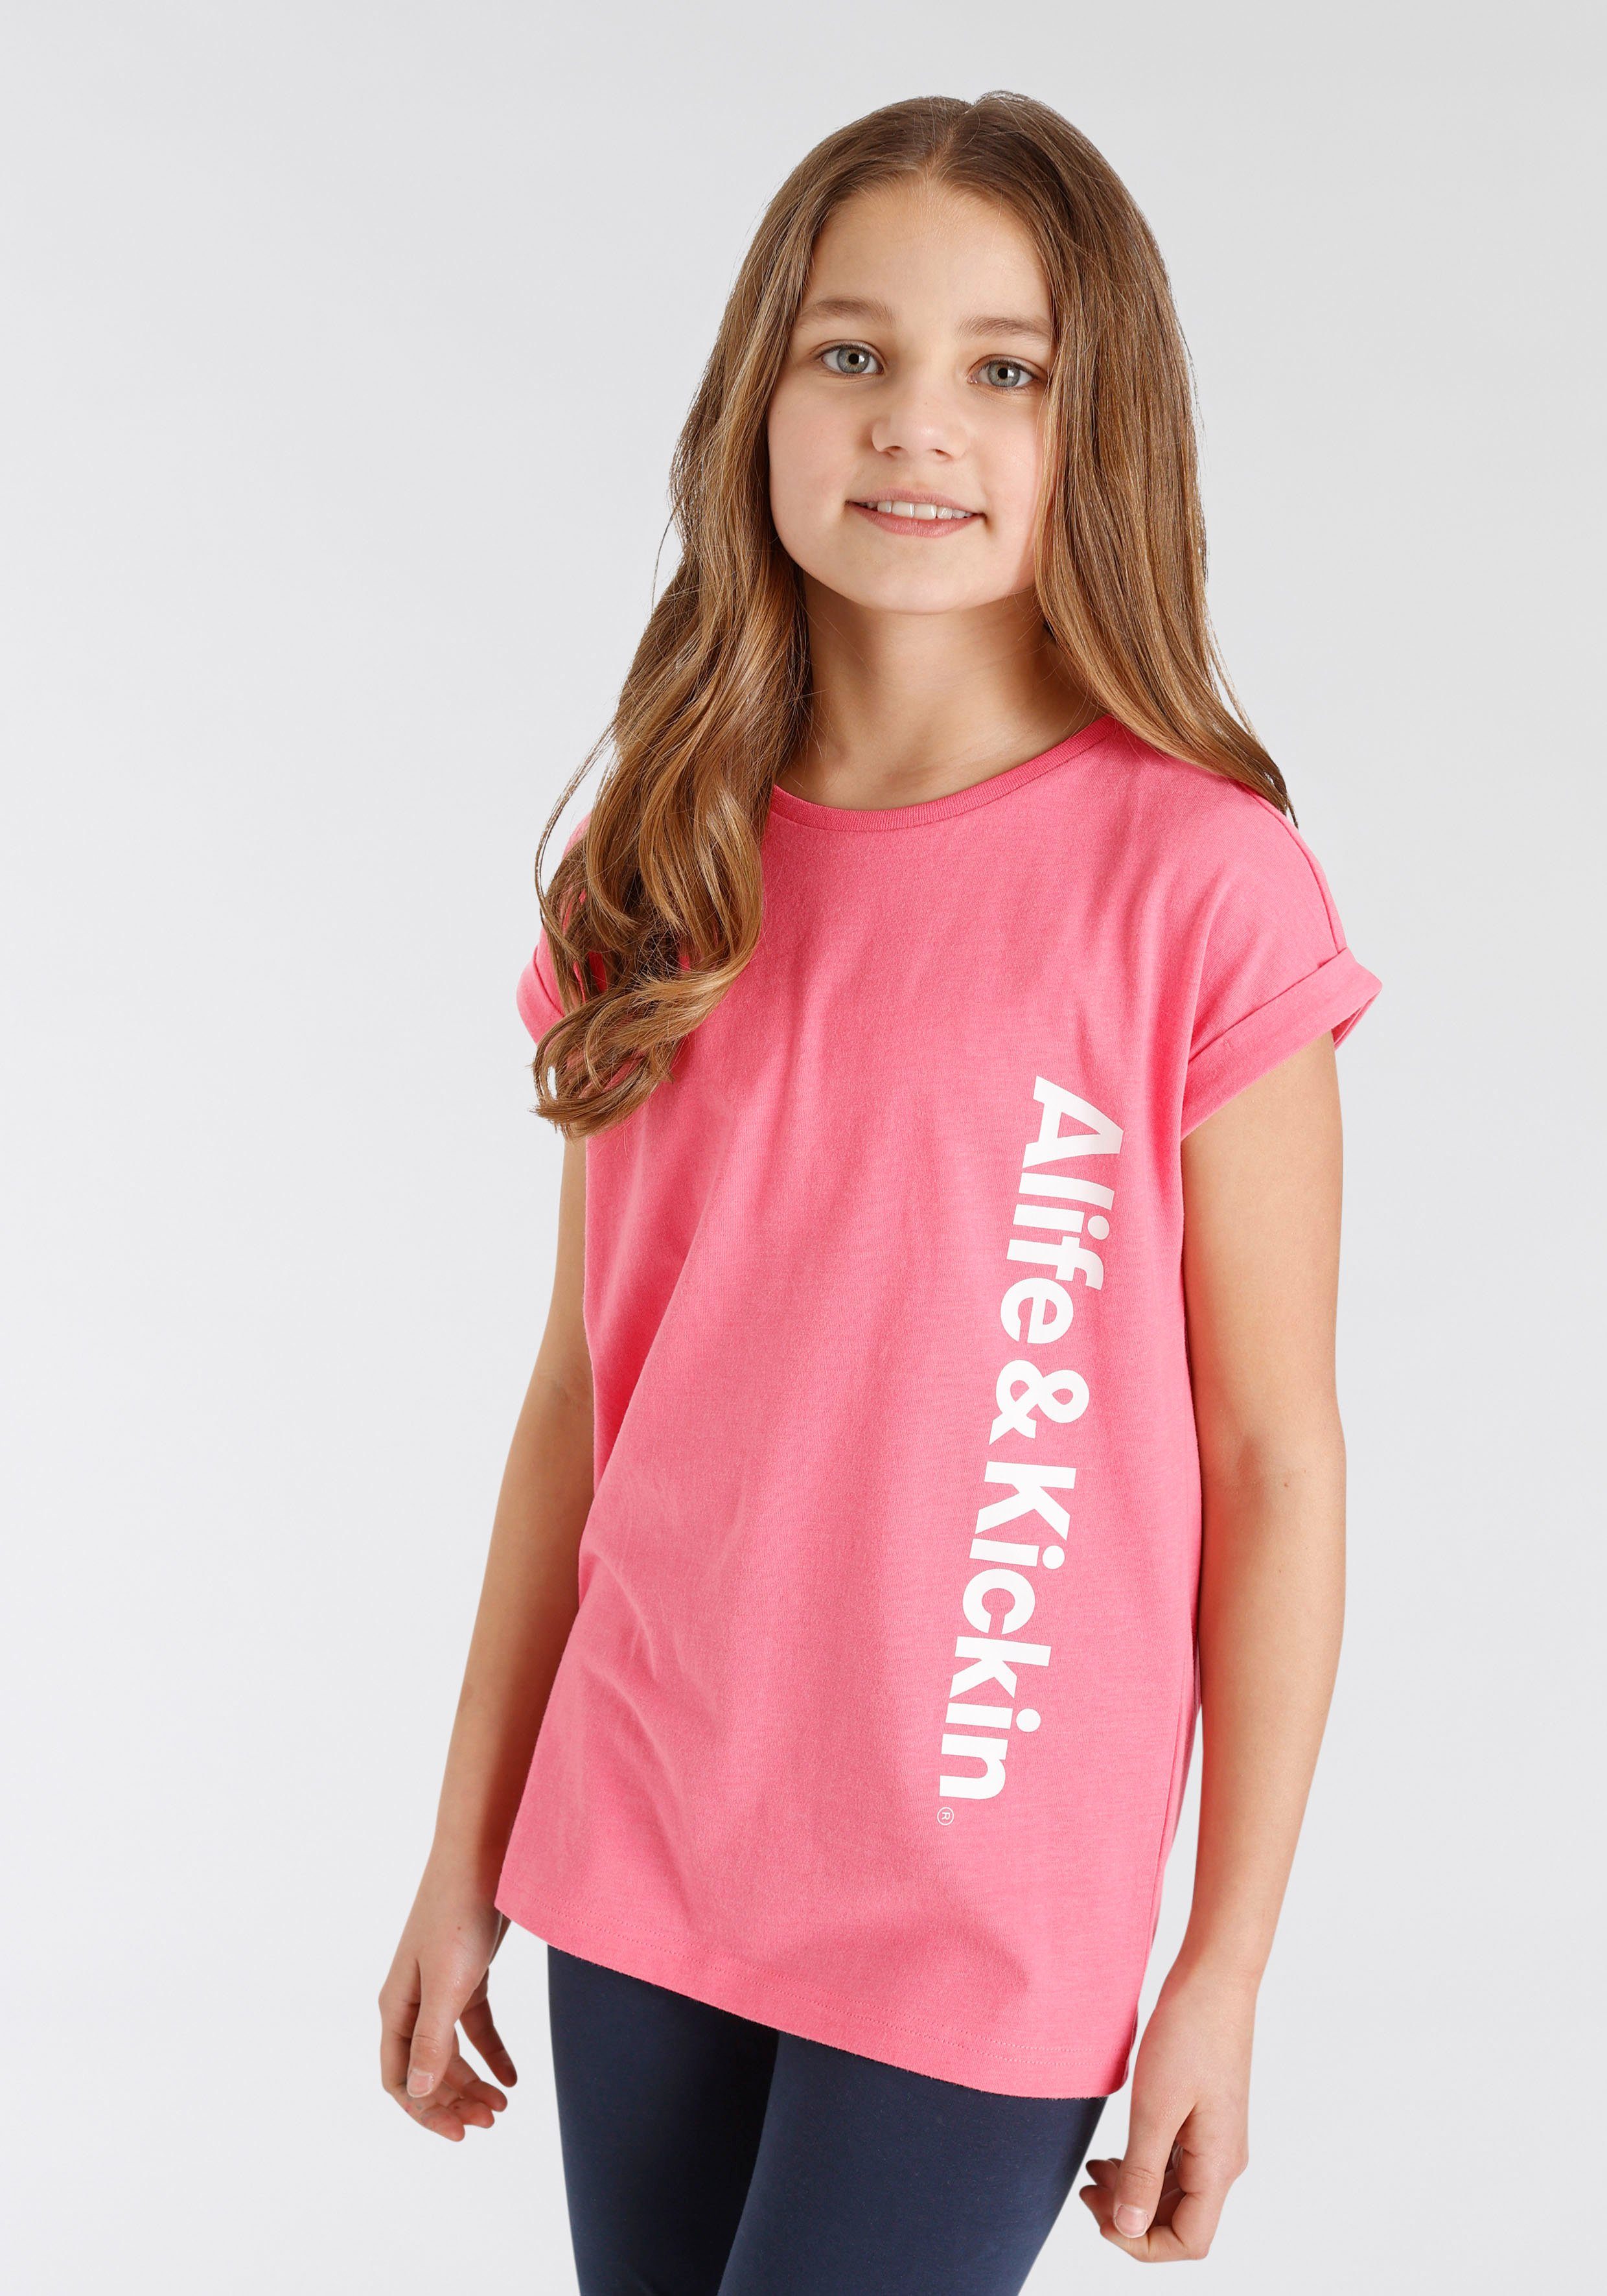 aus mit Baumwollmischung Super Alife & Alife Kickin Druck MARKE! softer Kickin für Jersey & NEUE Logo Kids., T-Shirt